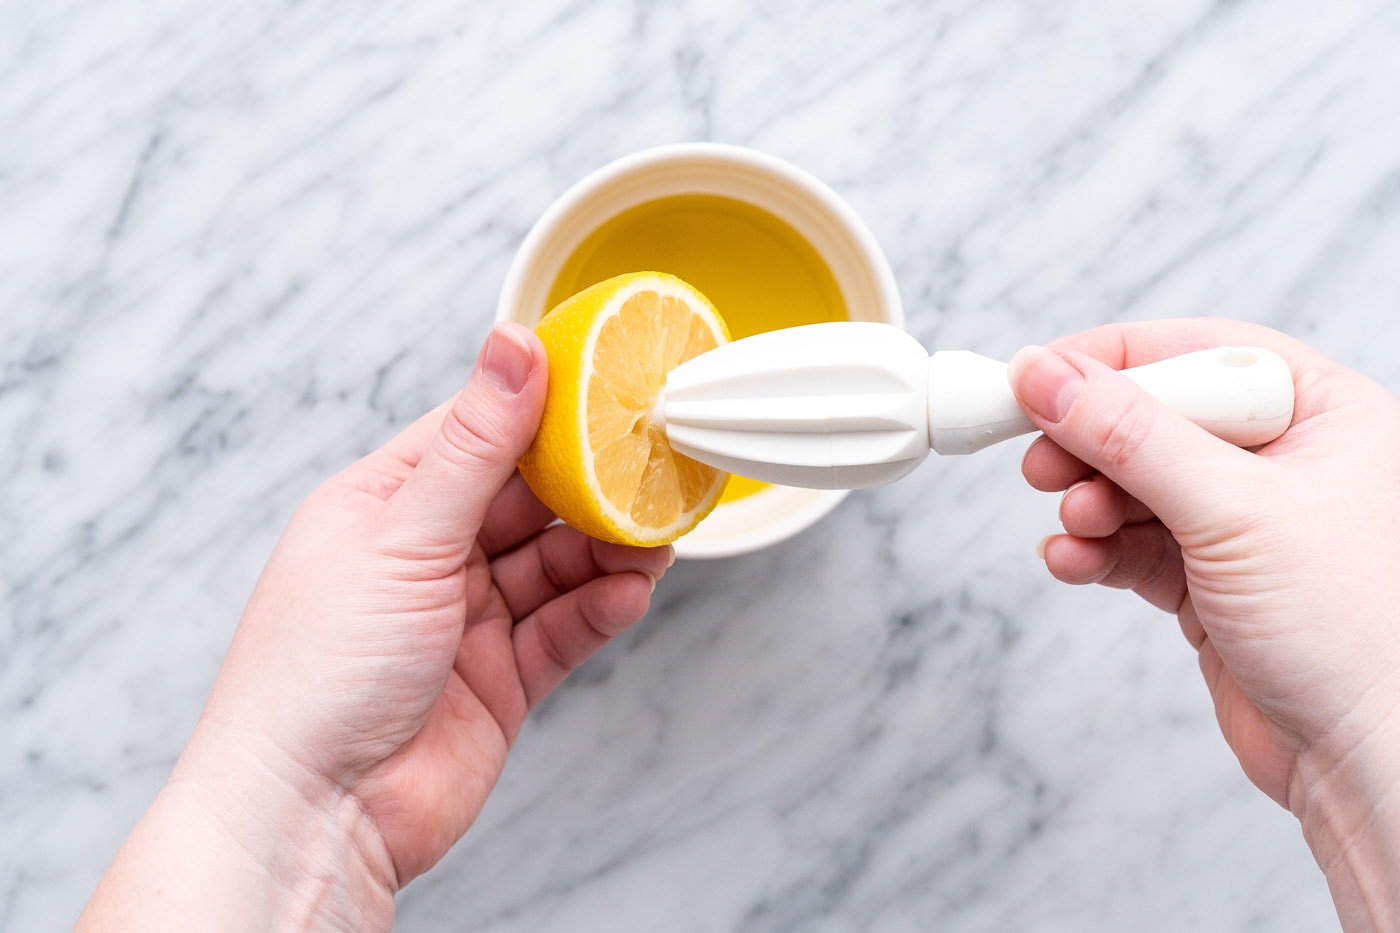 squeezing lemon juice out of lemon